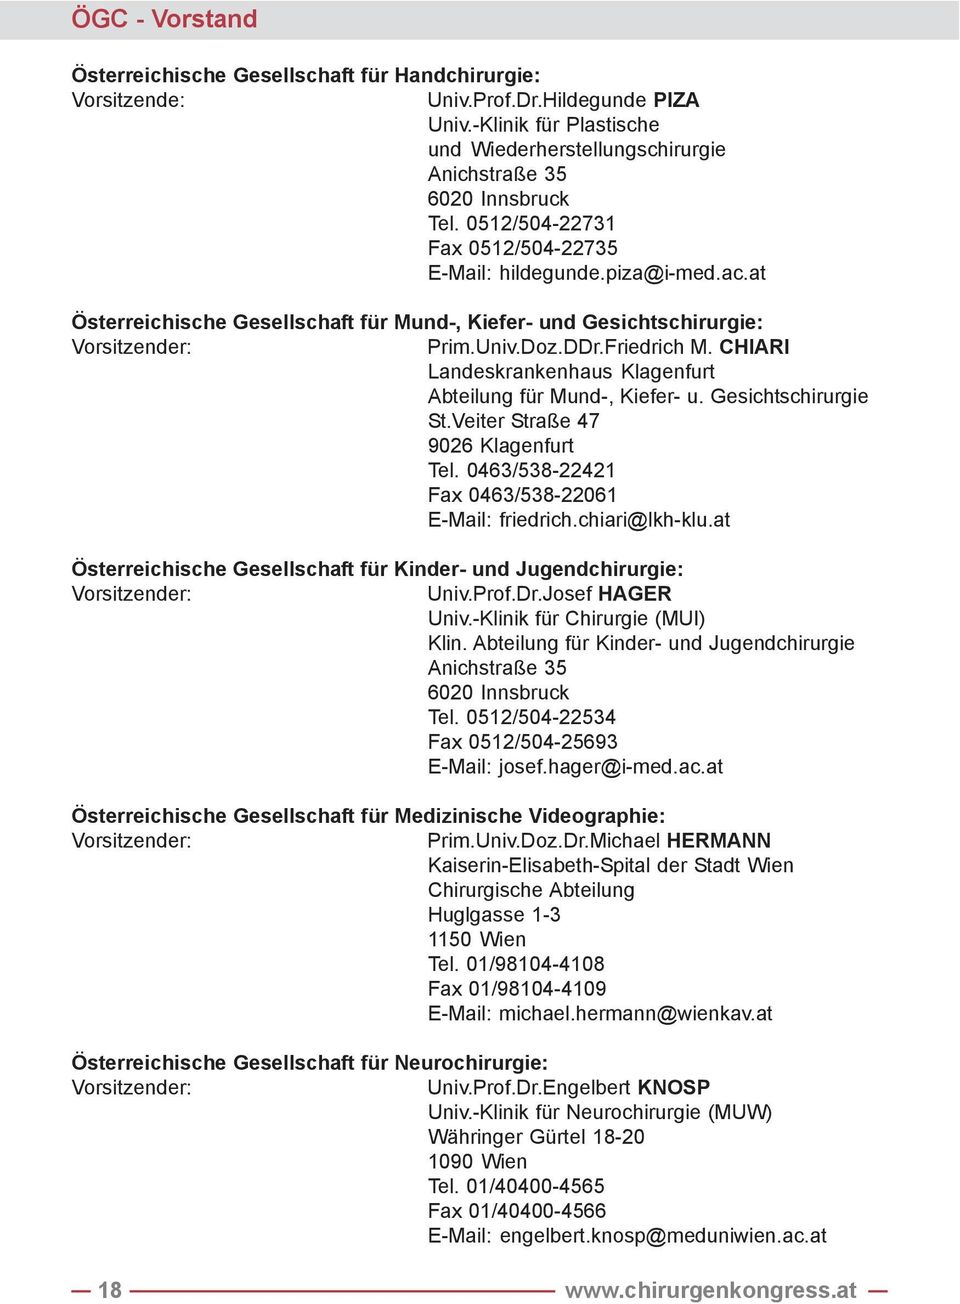 CHIARI Landeskrankenhaus Klagenfurt Abteilung für Mund-, Kiefer- u. Gesichtschirurgie St.Veiter Straße 47 9026 Klagenfurt Tel. 0463/538-22421 Fax 0463/538-22061 E-Mail: friedrich.chiari@lkh-klu.